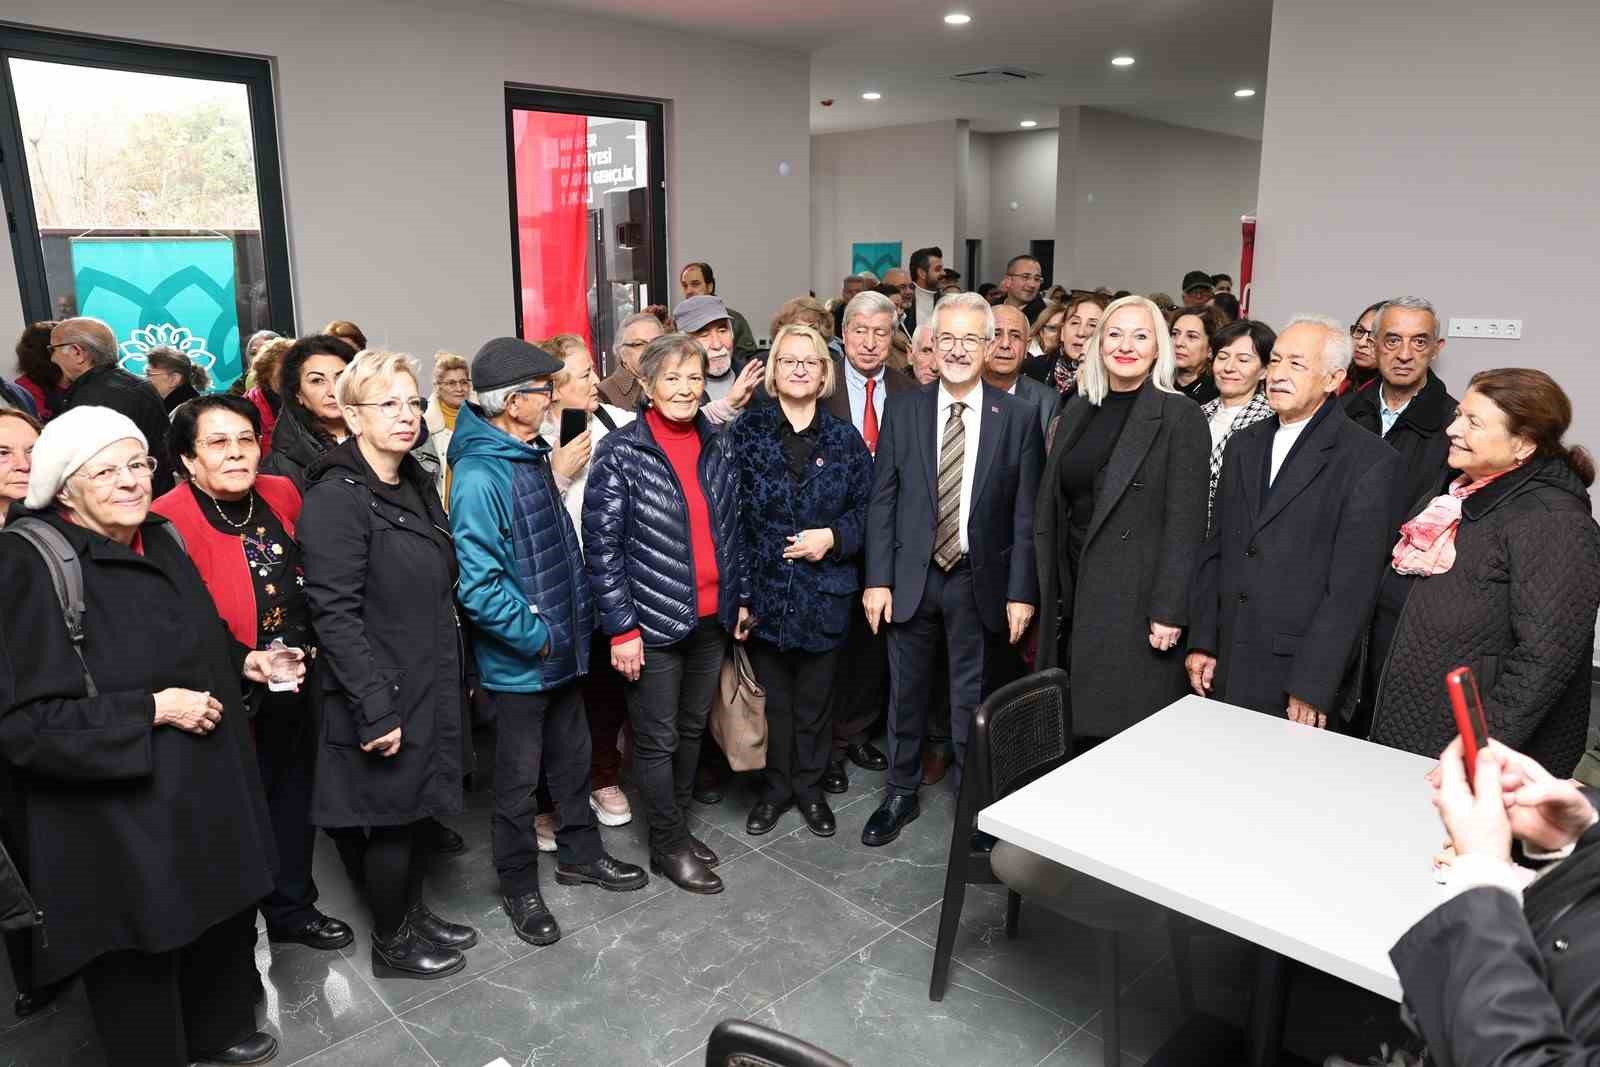 Nilüfer’de Emekliler Parkı ve Olgun Gençlik Lokali hizmete açıldı